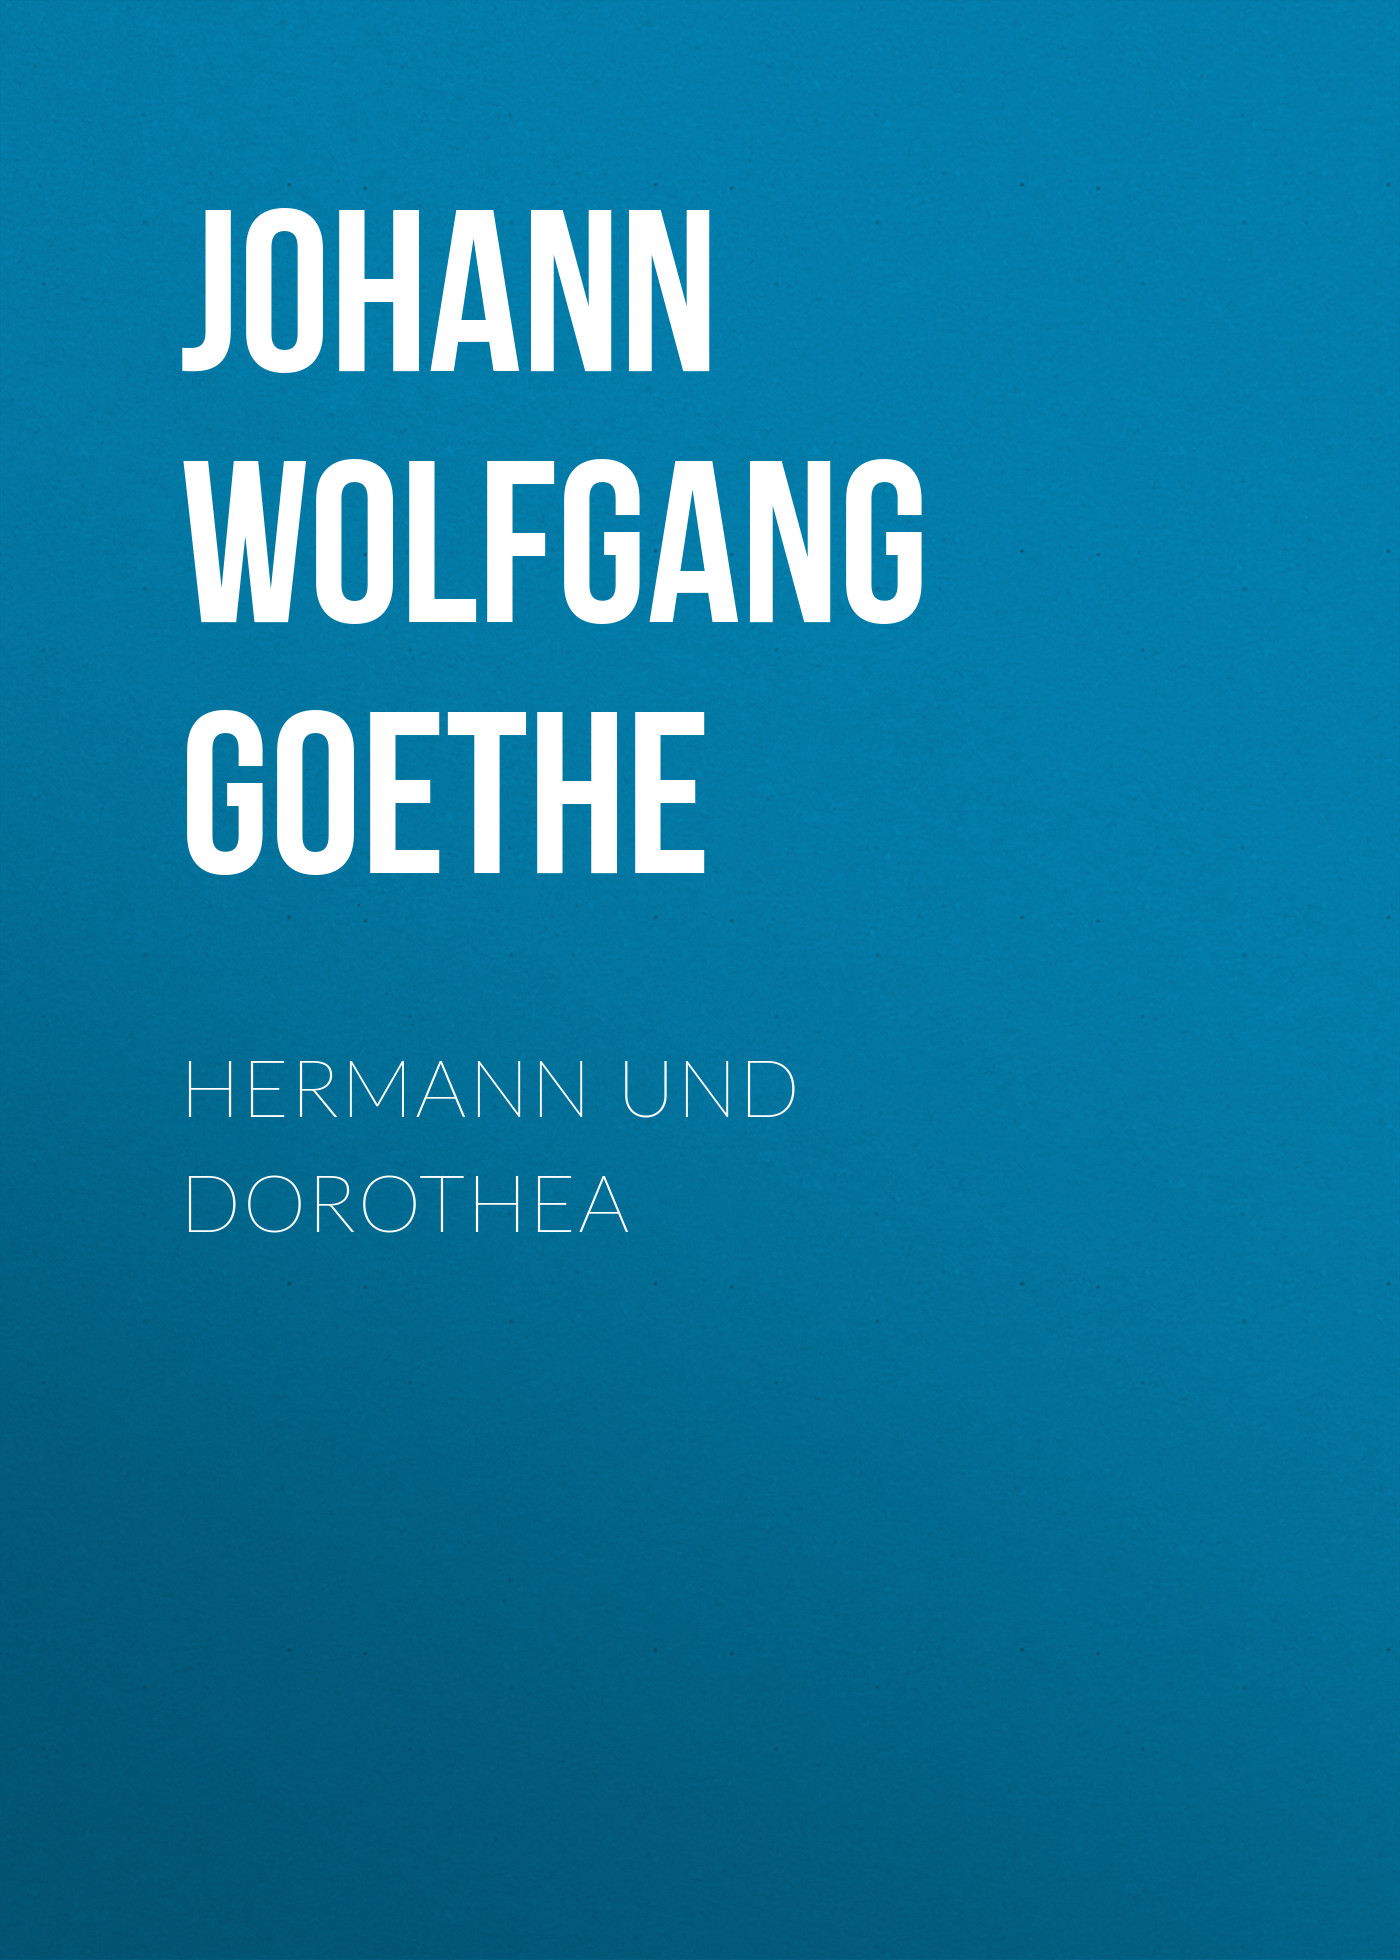 Книга Hermann und Dorothea из серии , созданная Johann von Goethe, может относится к жанру Зарубежная старинная литература, Зарубежная классика. Стоимость электронной книги Hermann und Dorothea с идентификатором 25202471 составляет 0 руб.